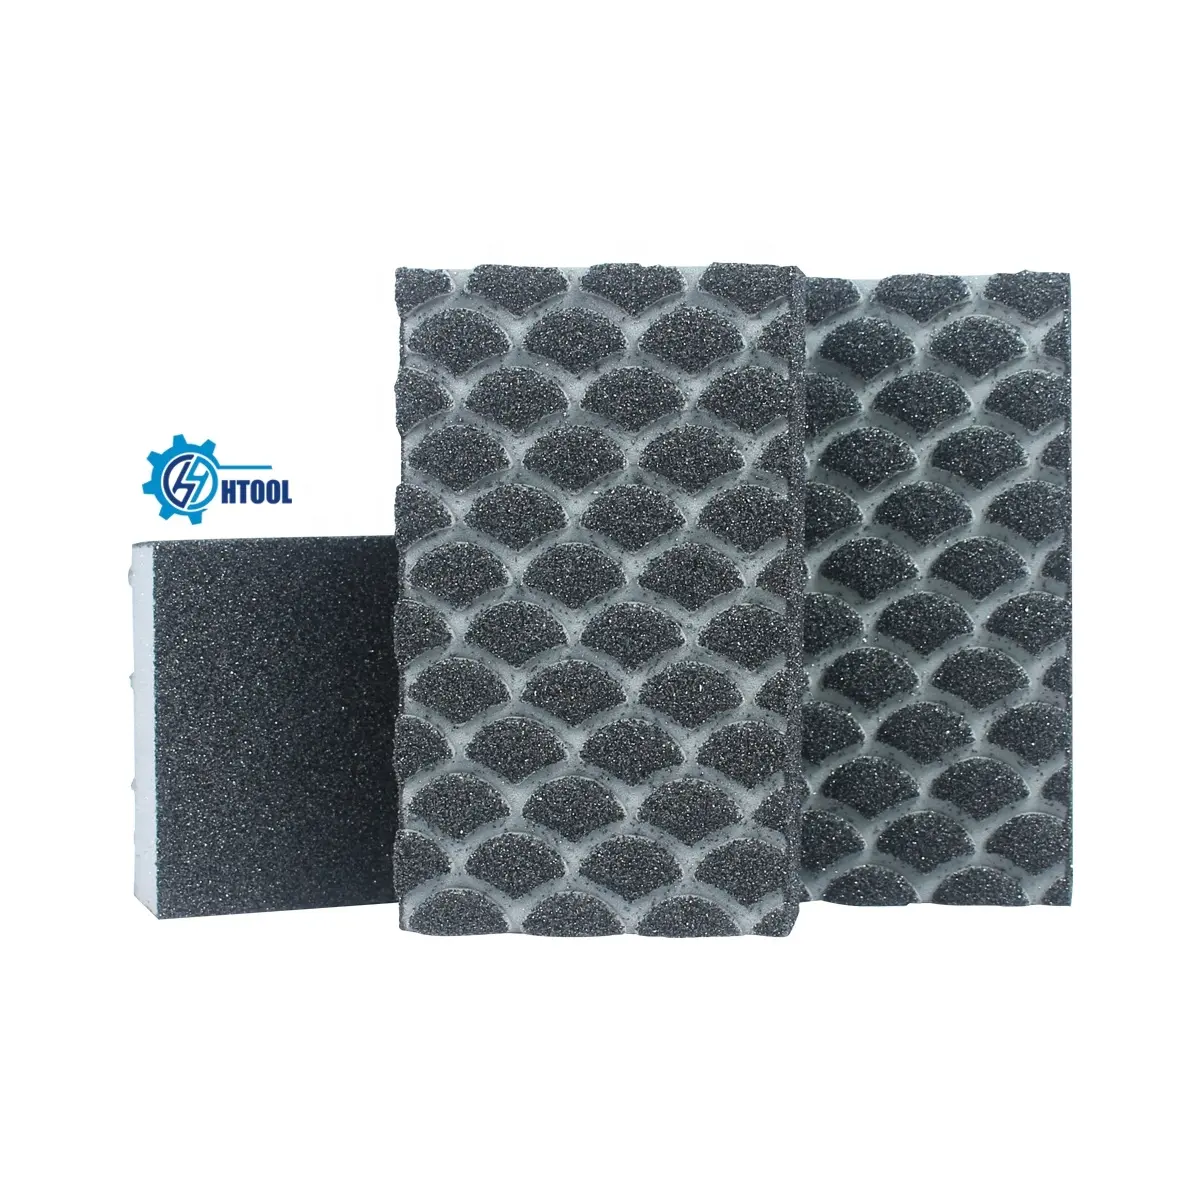 Four Side Black Sponge Aluminium Oxide Sanding Cleaning Block Abrasive Tool for Wet Using Polishing